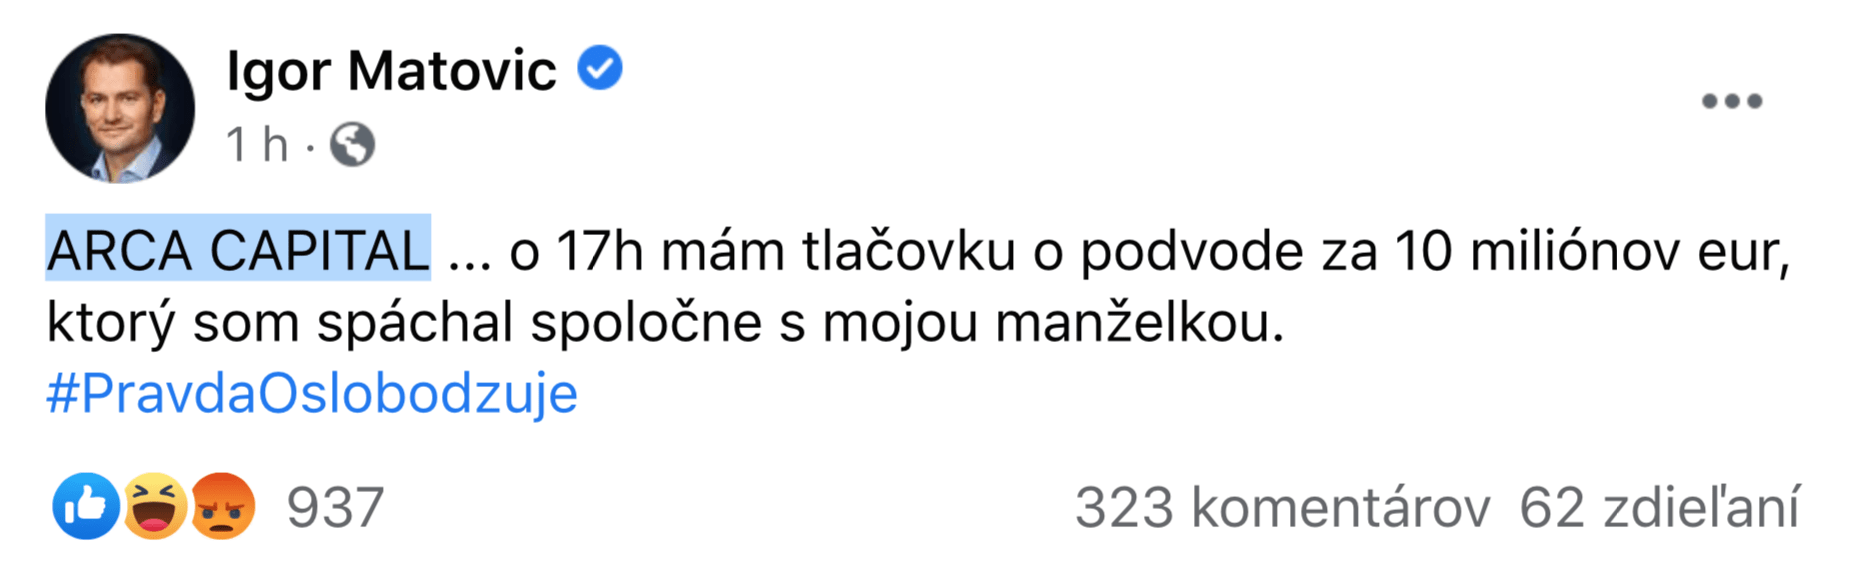 Screenshot Facebook Igora Matoviča